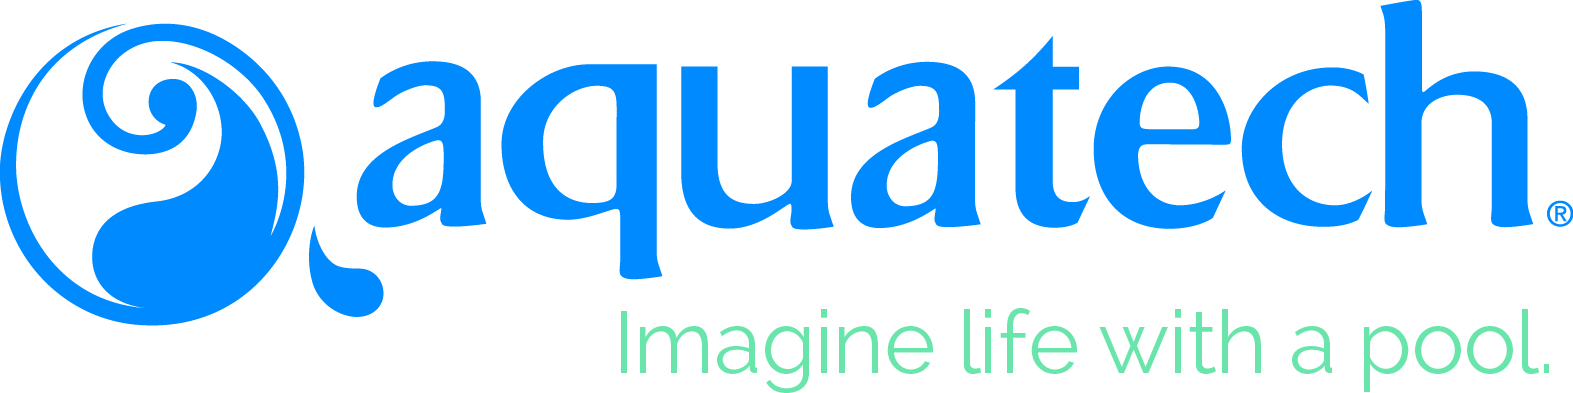 aquatech_tagline - Custom Pool Concepts An Aquatech Builder